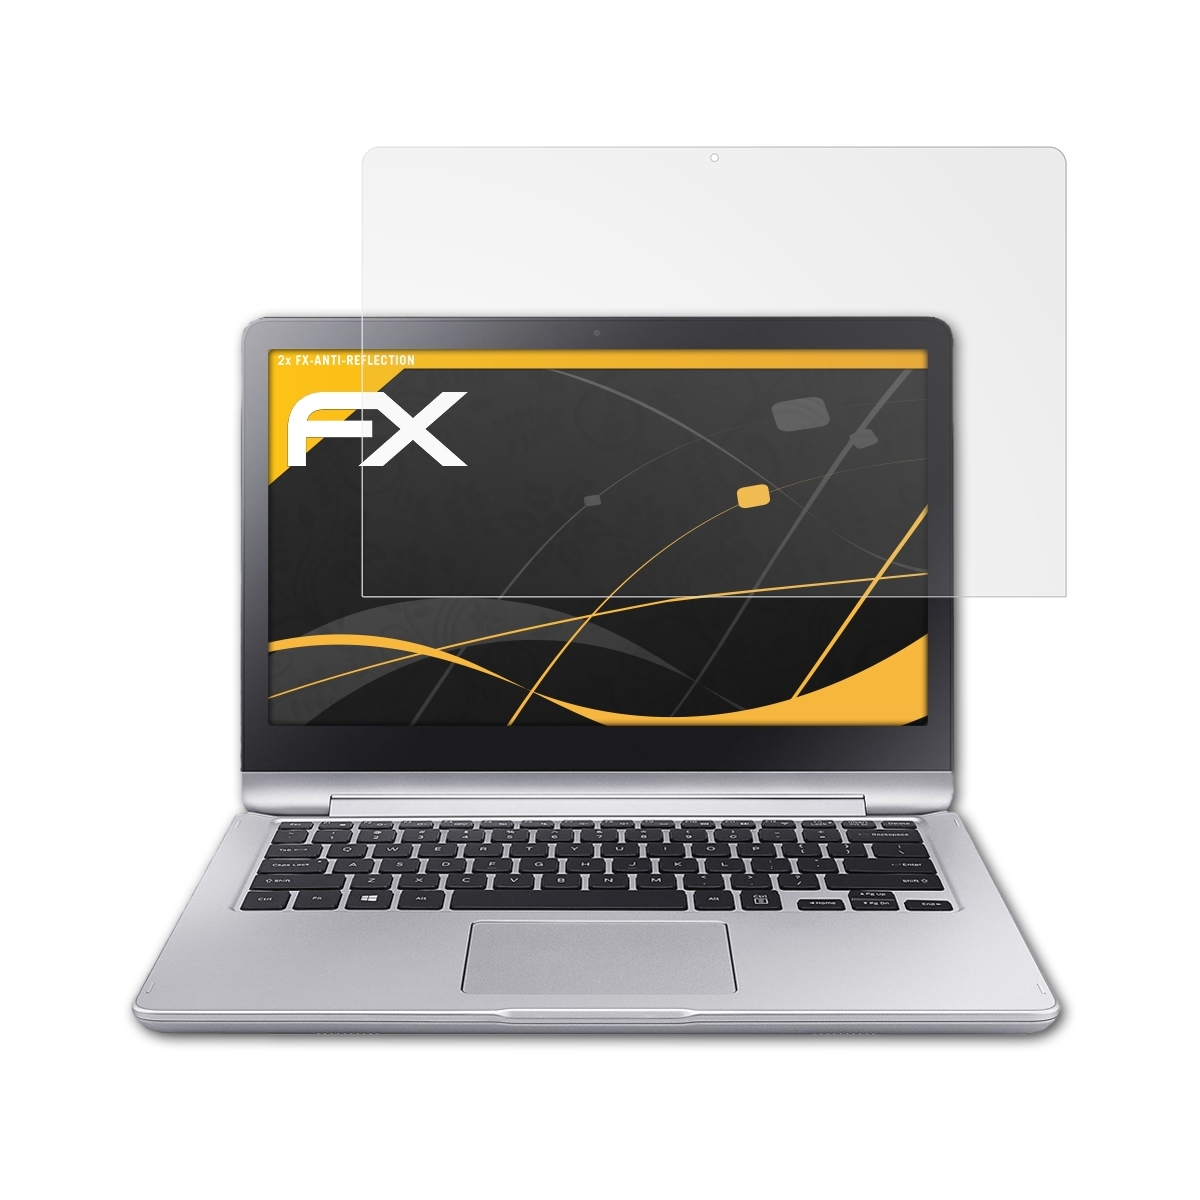 Notebook FX-Antireflex (15.6 2x ATFOLIX 7 Displayschutz(für inch)) Samsung Spin